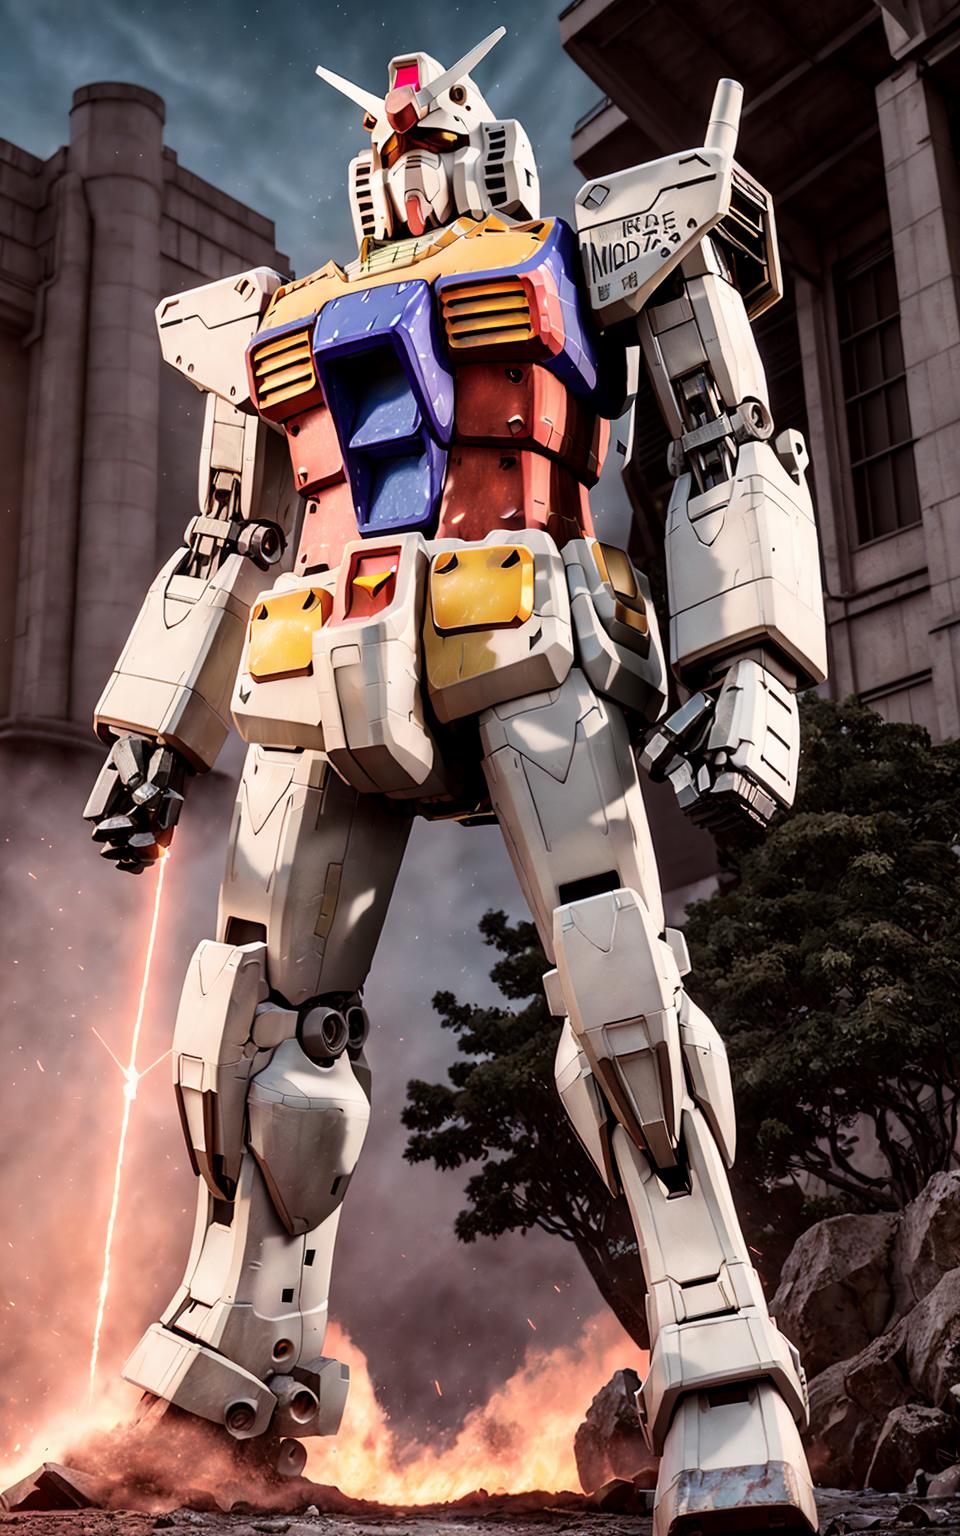 Gundam RX78 image by yang117